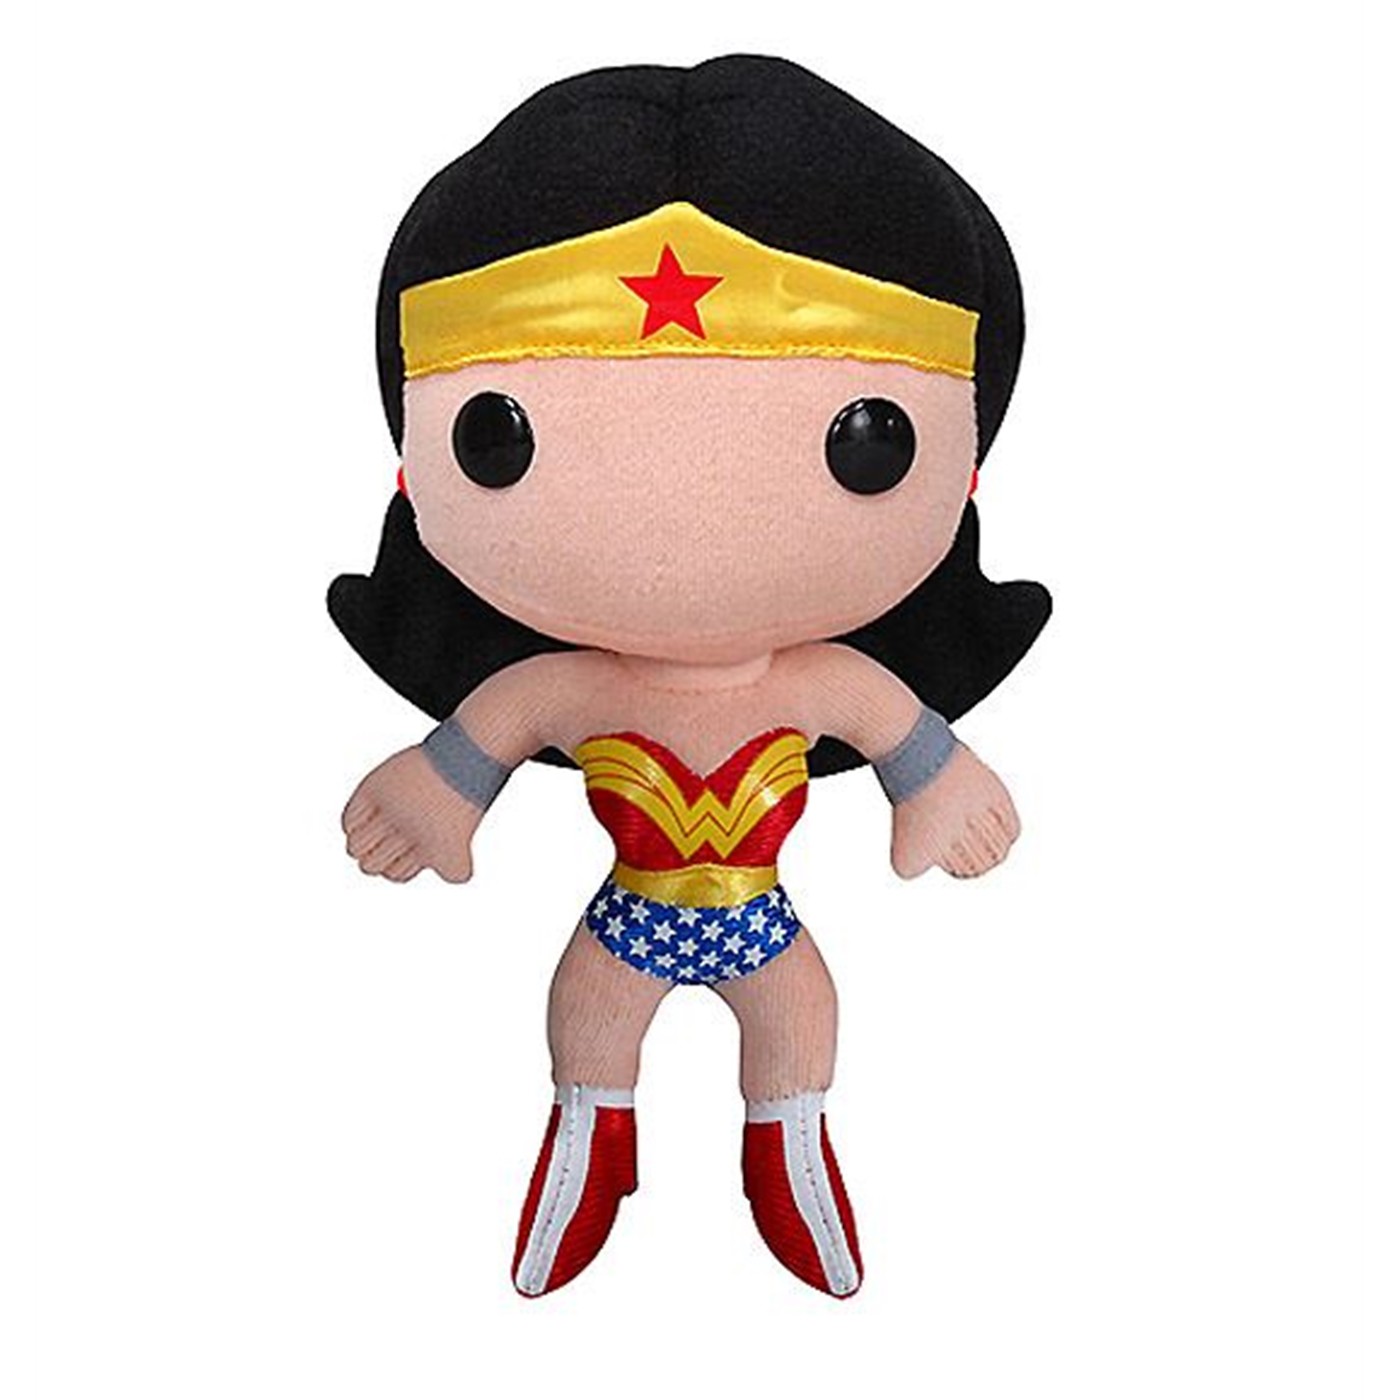 Wonder Woman DC Universe Plush Toy